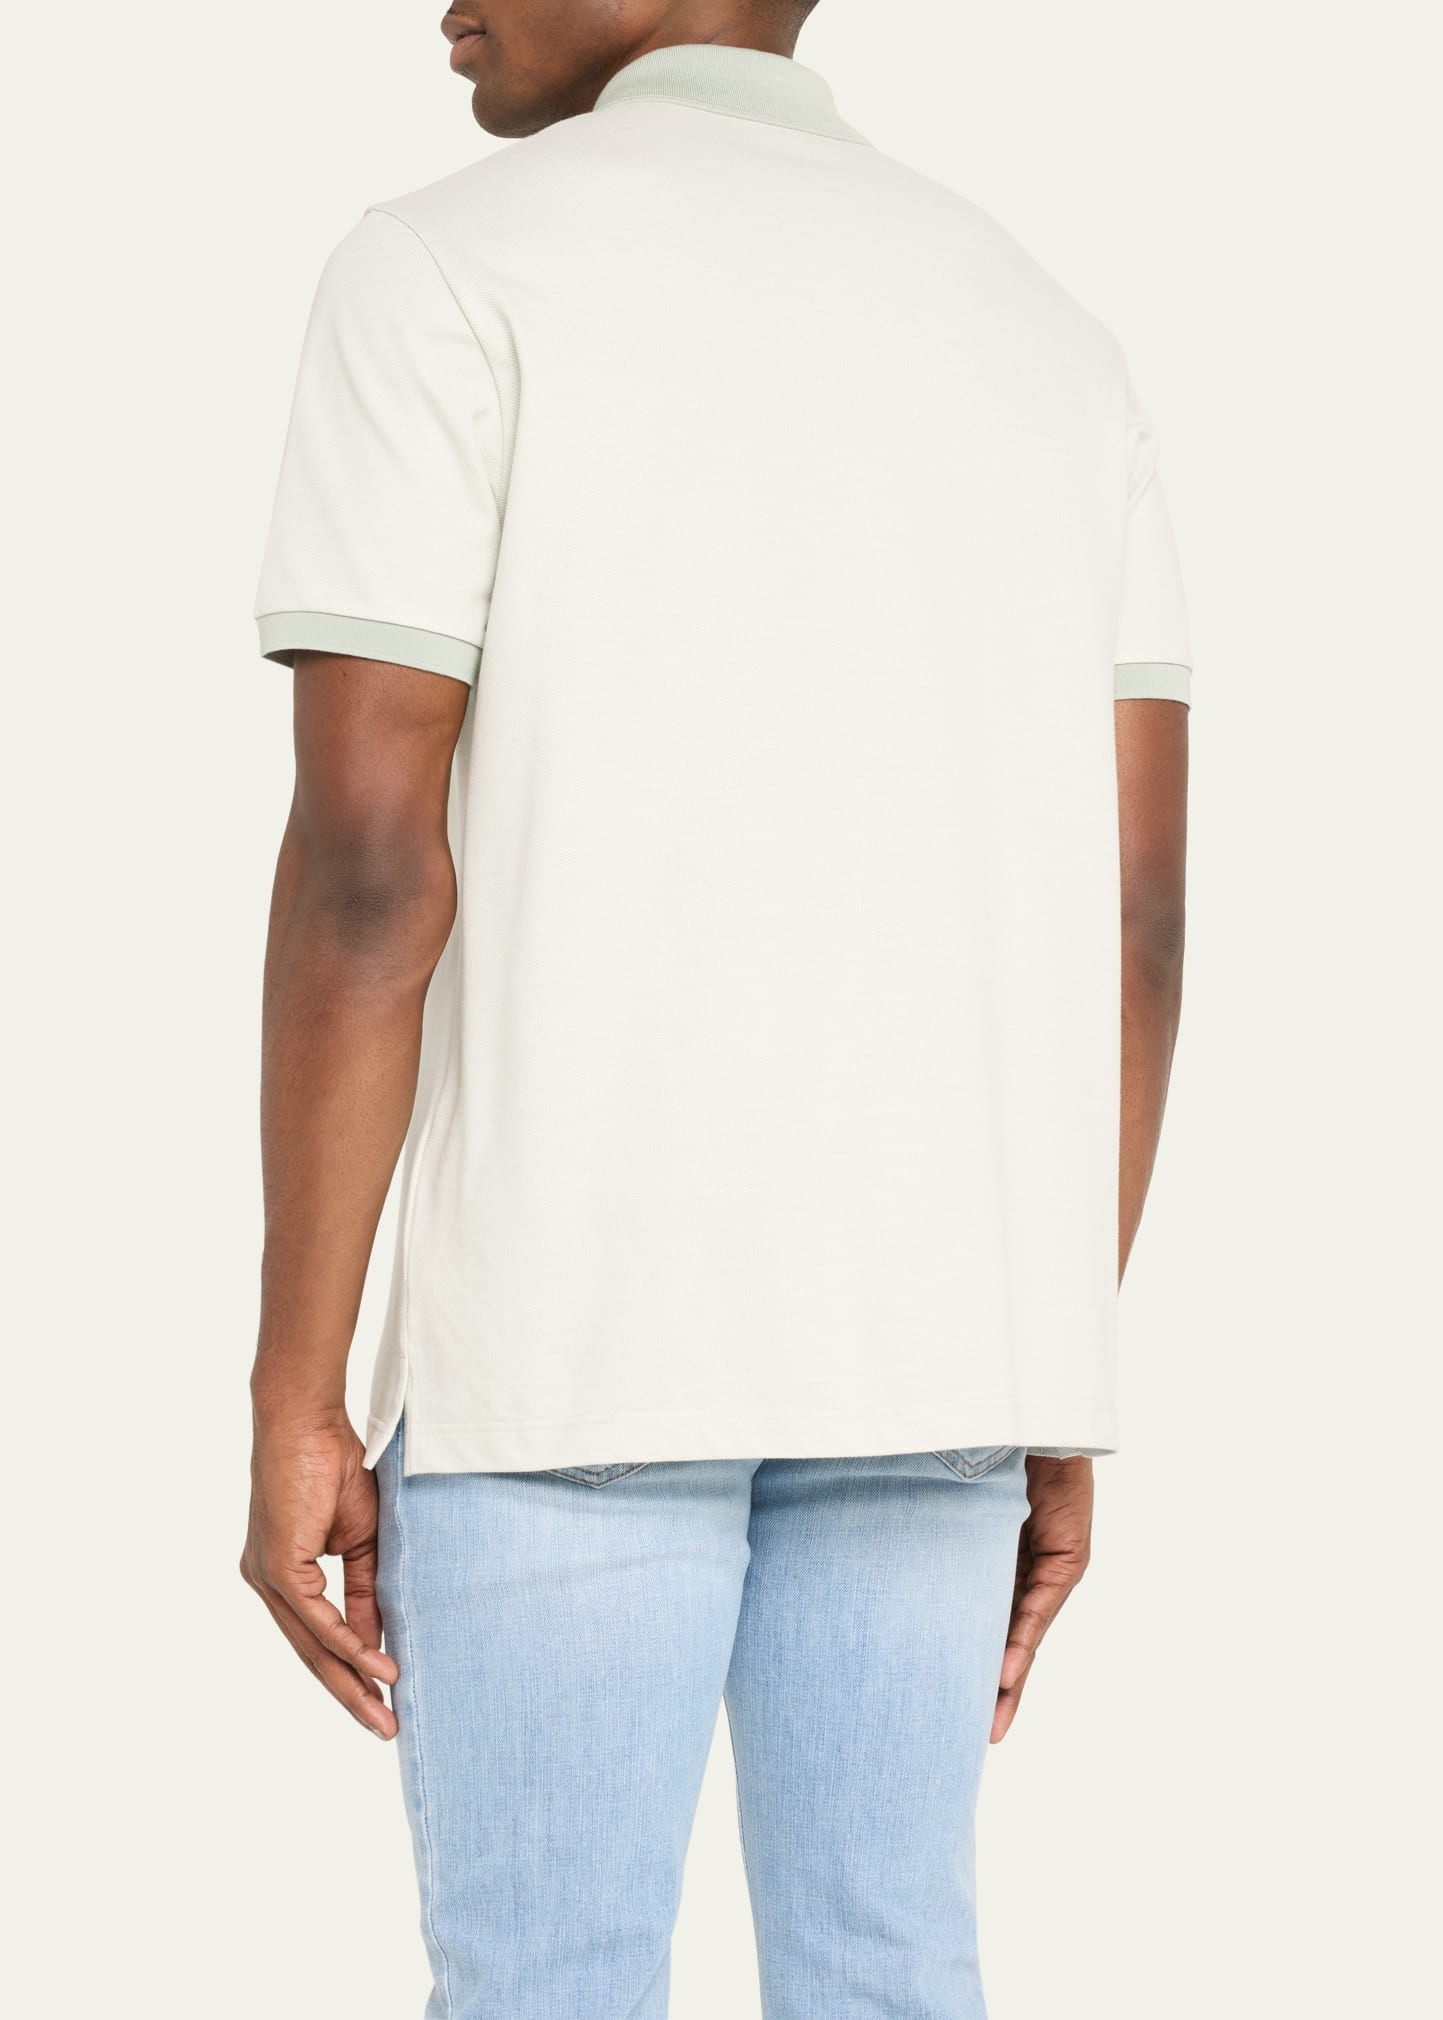 Men's Cotton Polo Shirt - 3